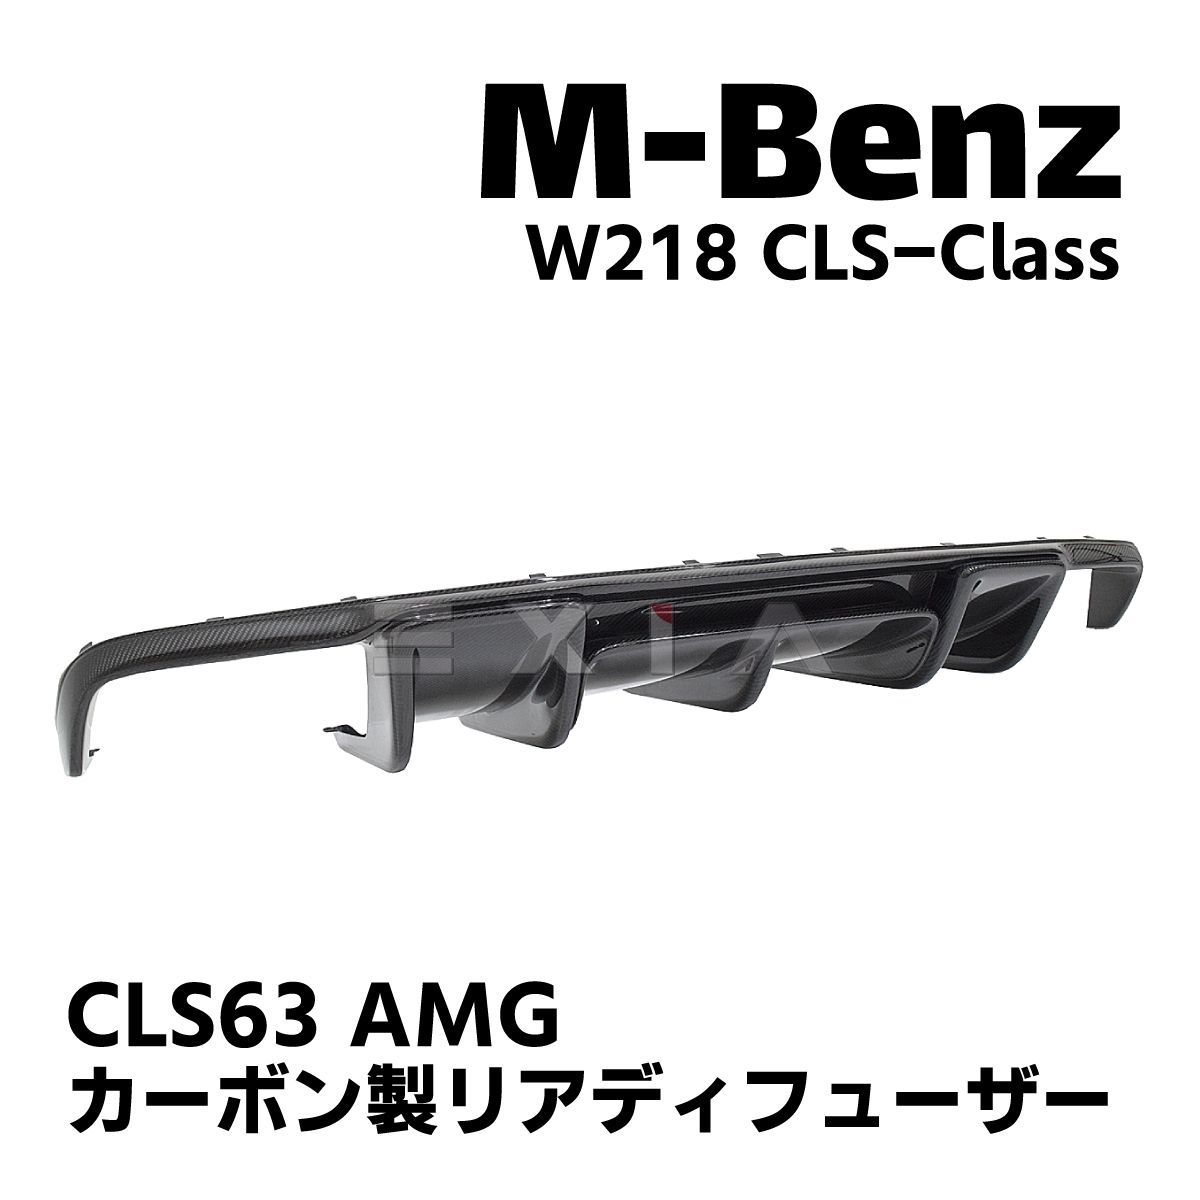 MercedesBenz メルセデスベンツ W218 CLSクラス カーボン製 リア